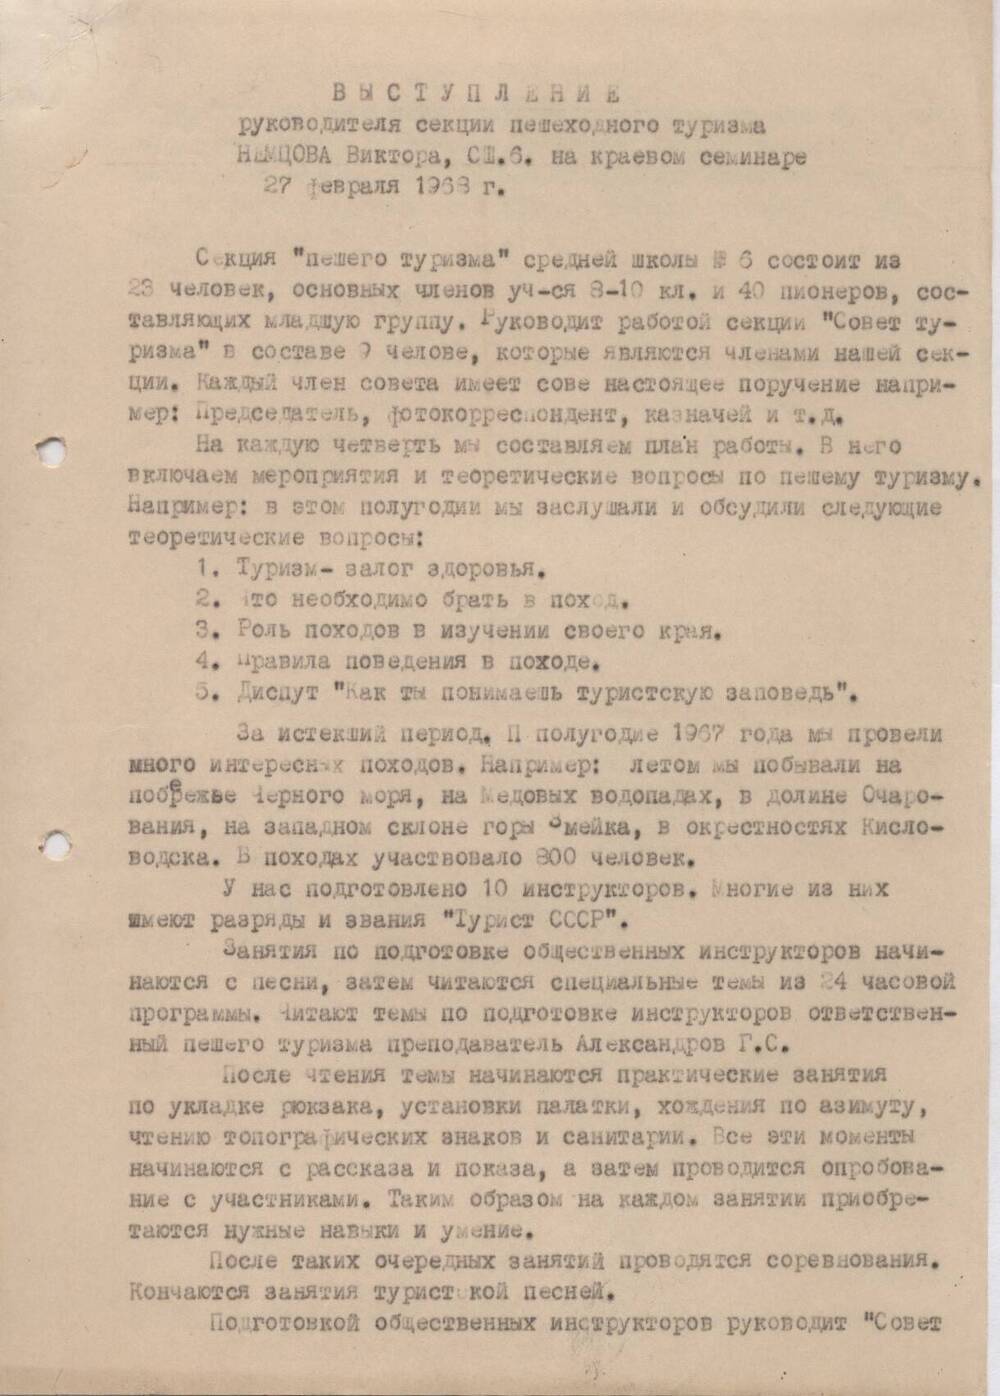 Выступление руководителя секции пешеходного туризма Немцова Виктора, СШ № 6 на краевом семинаре 27 февраля 1968 г.